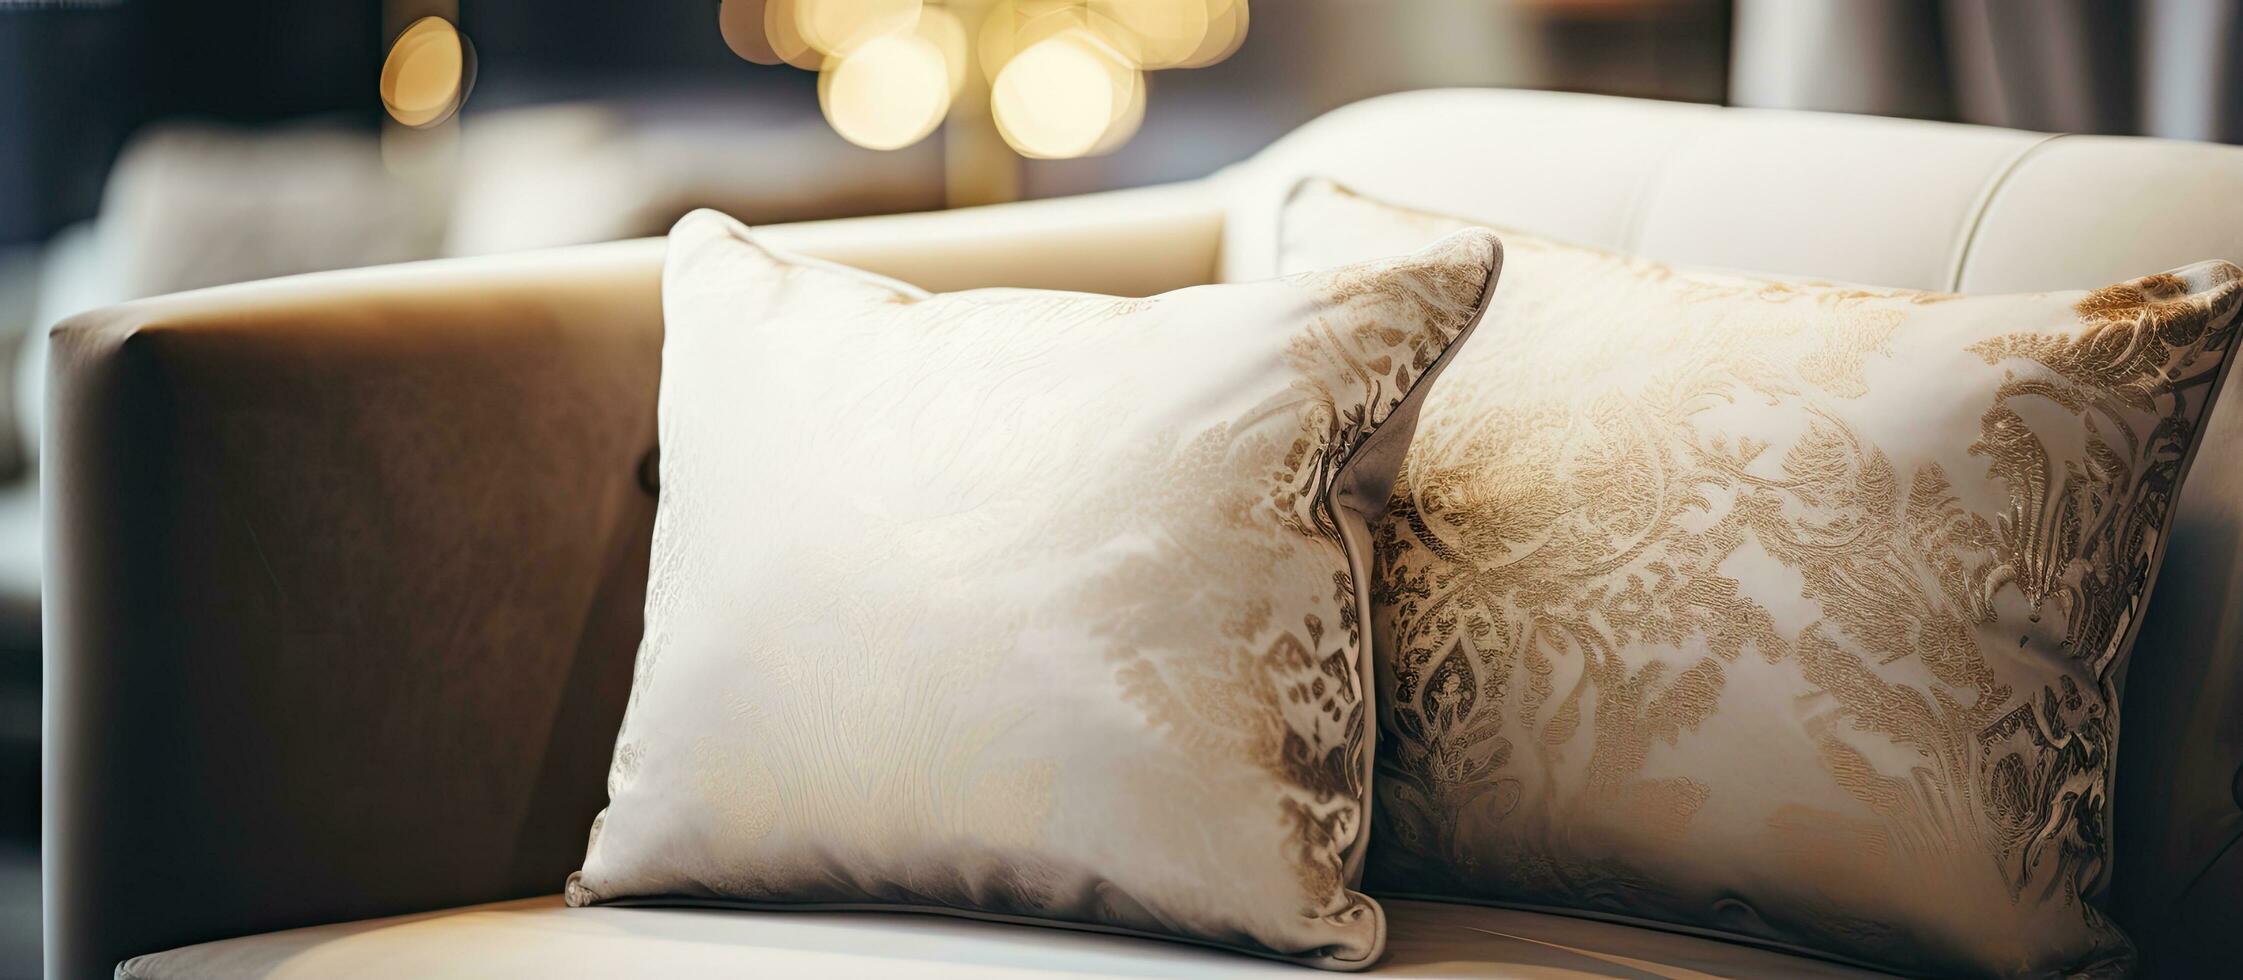 ancien lumière filtre améliore le esthétique de une luxueux oreiller sur une canapé dans le vivant pièce intérieur photo